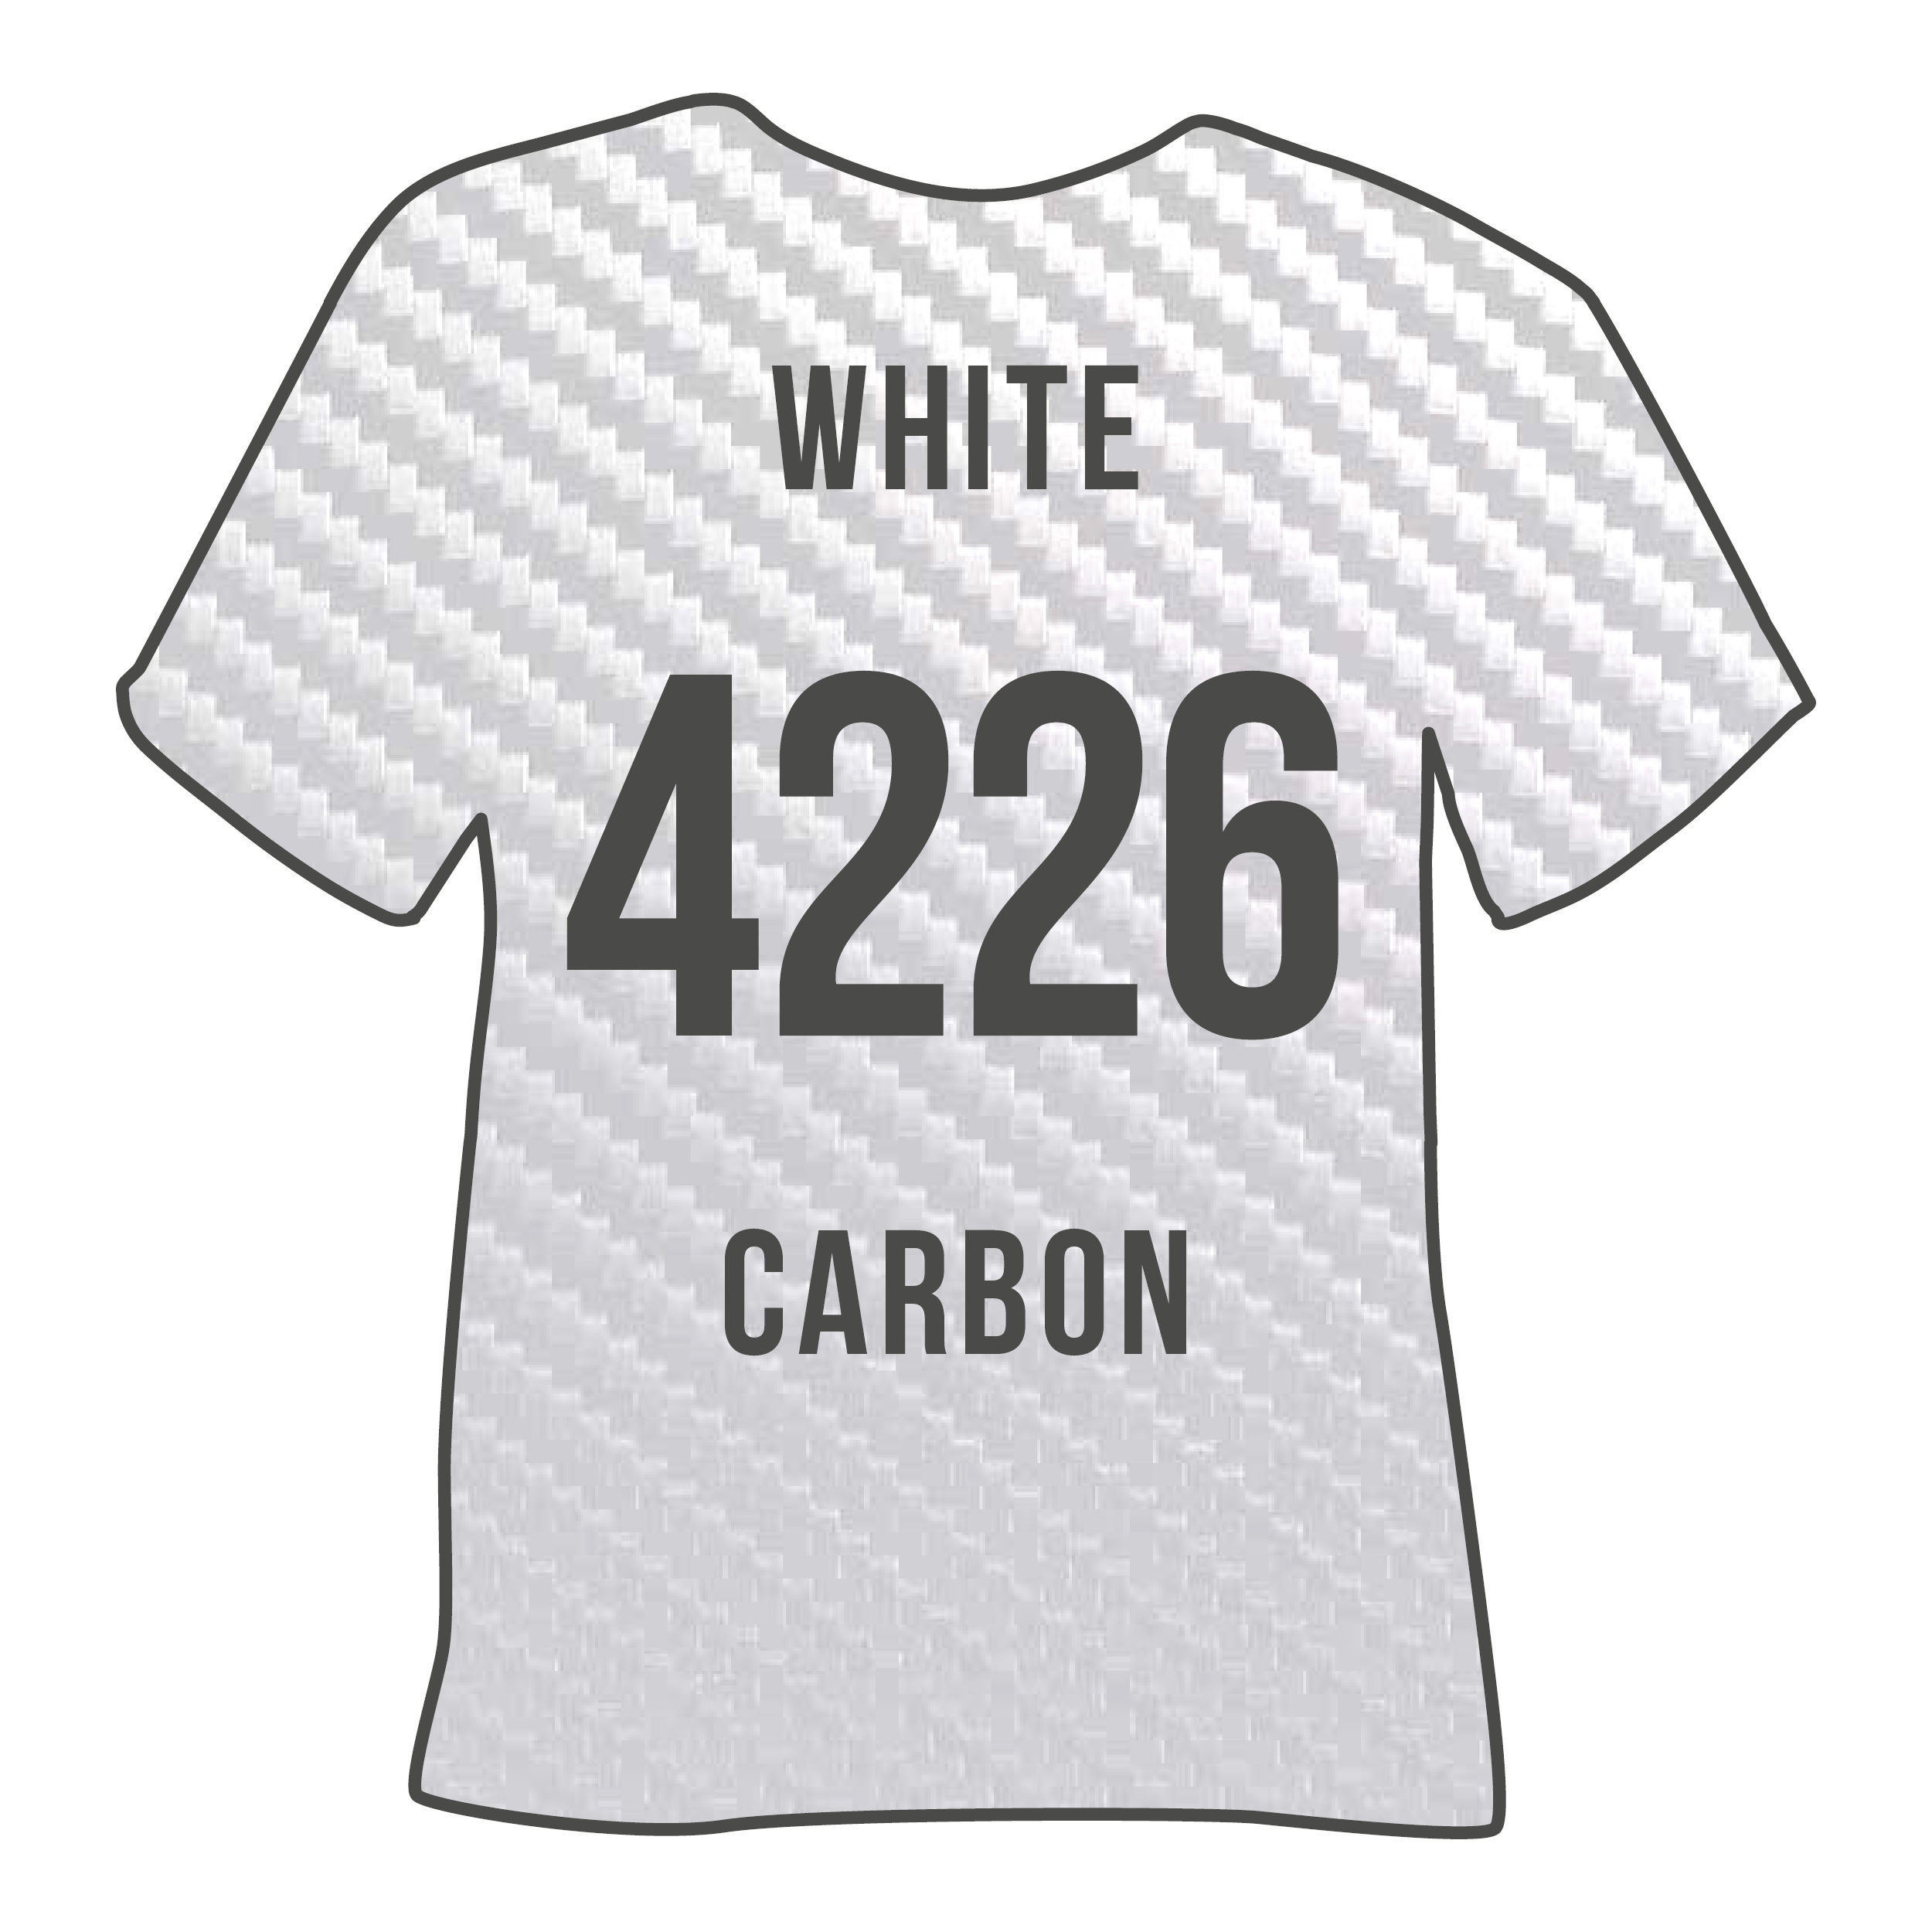 4226 WHITE CARBON